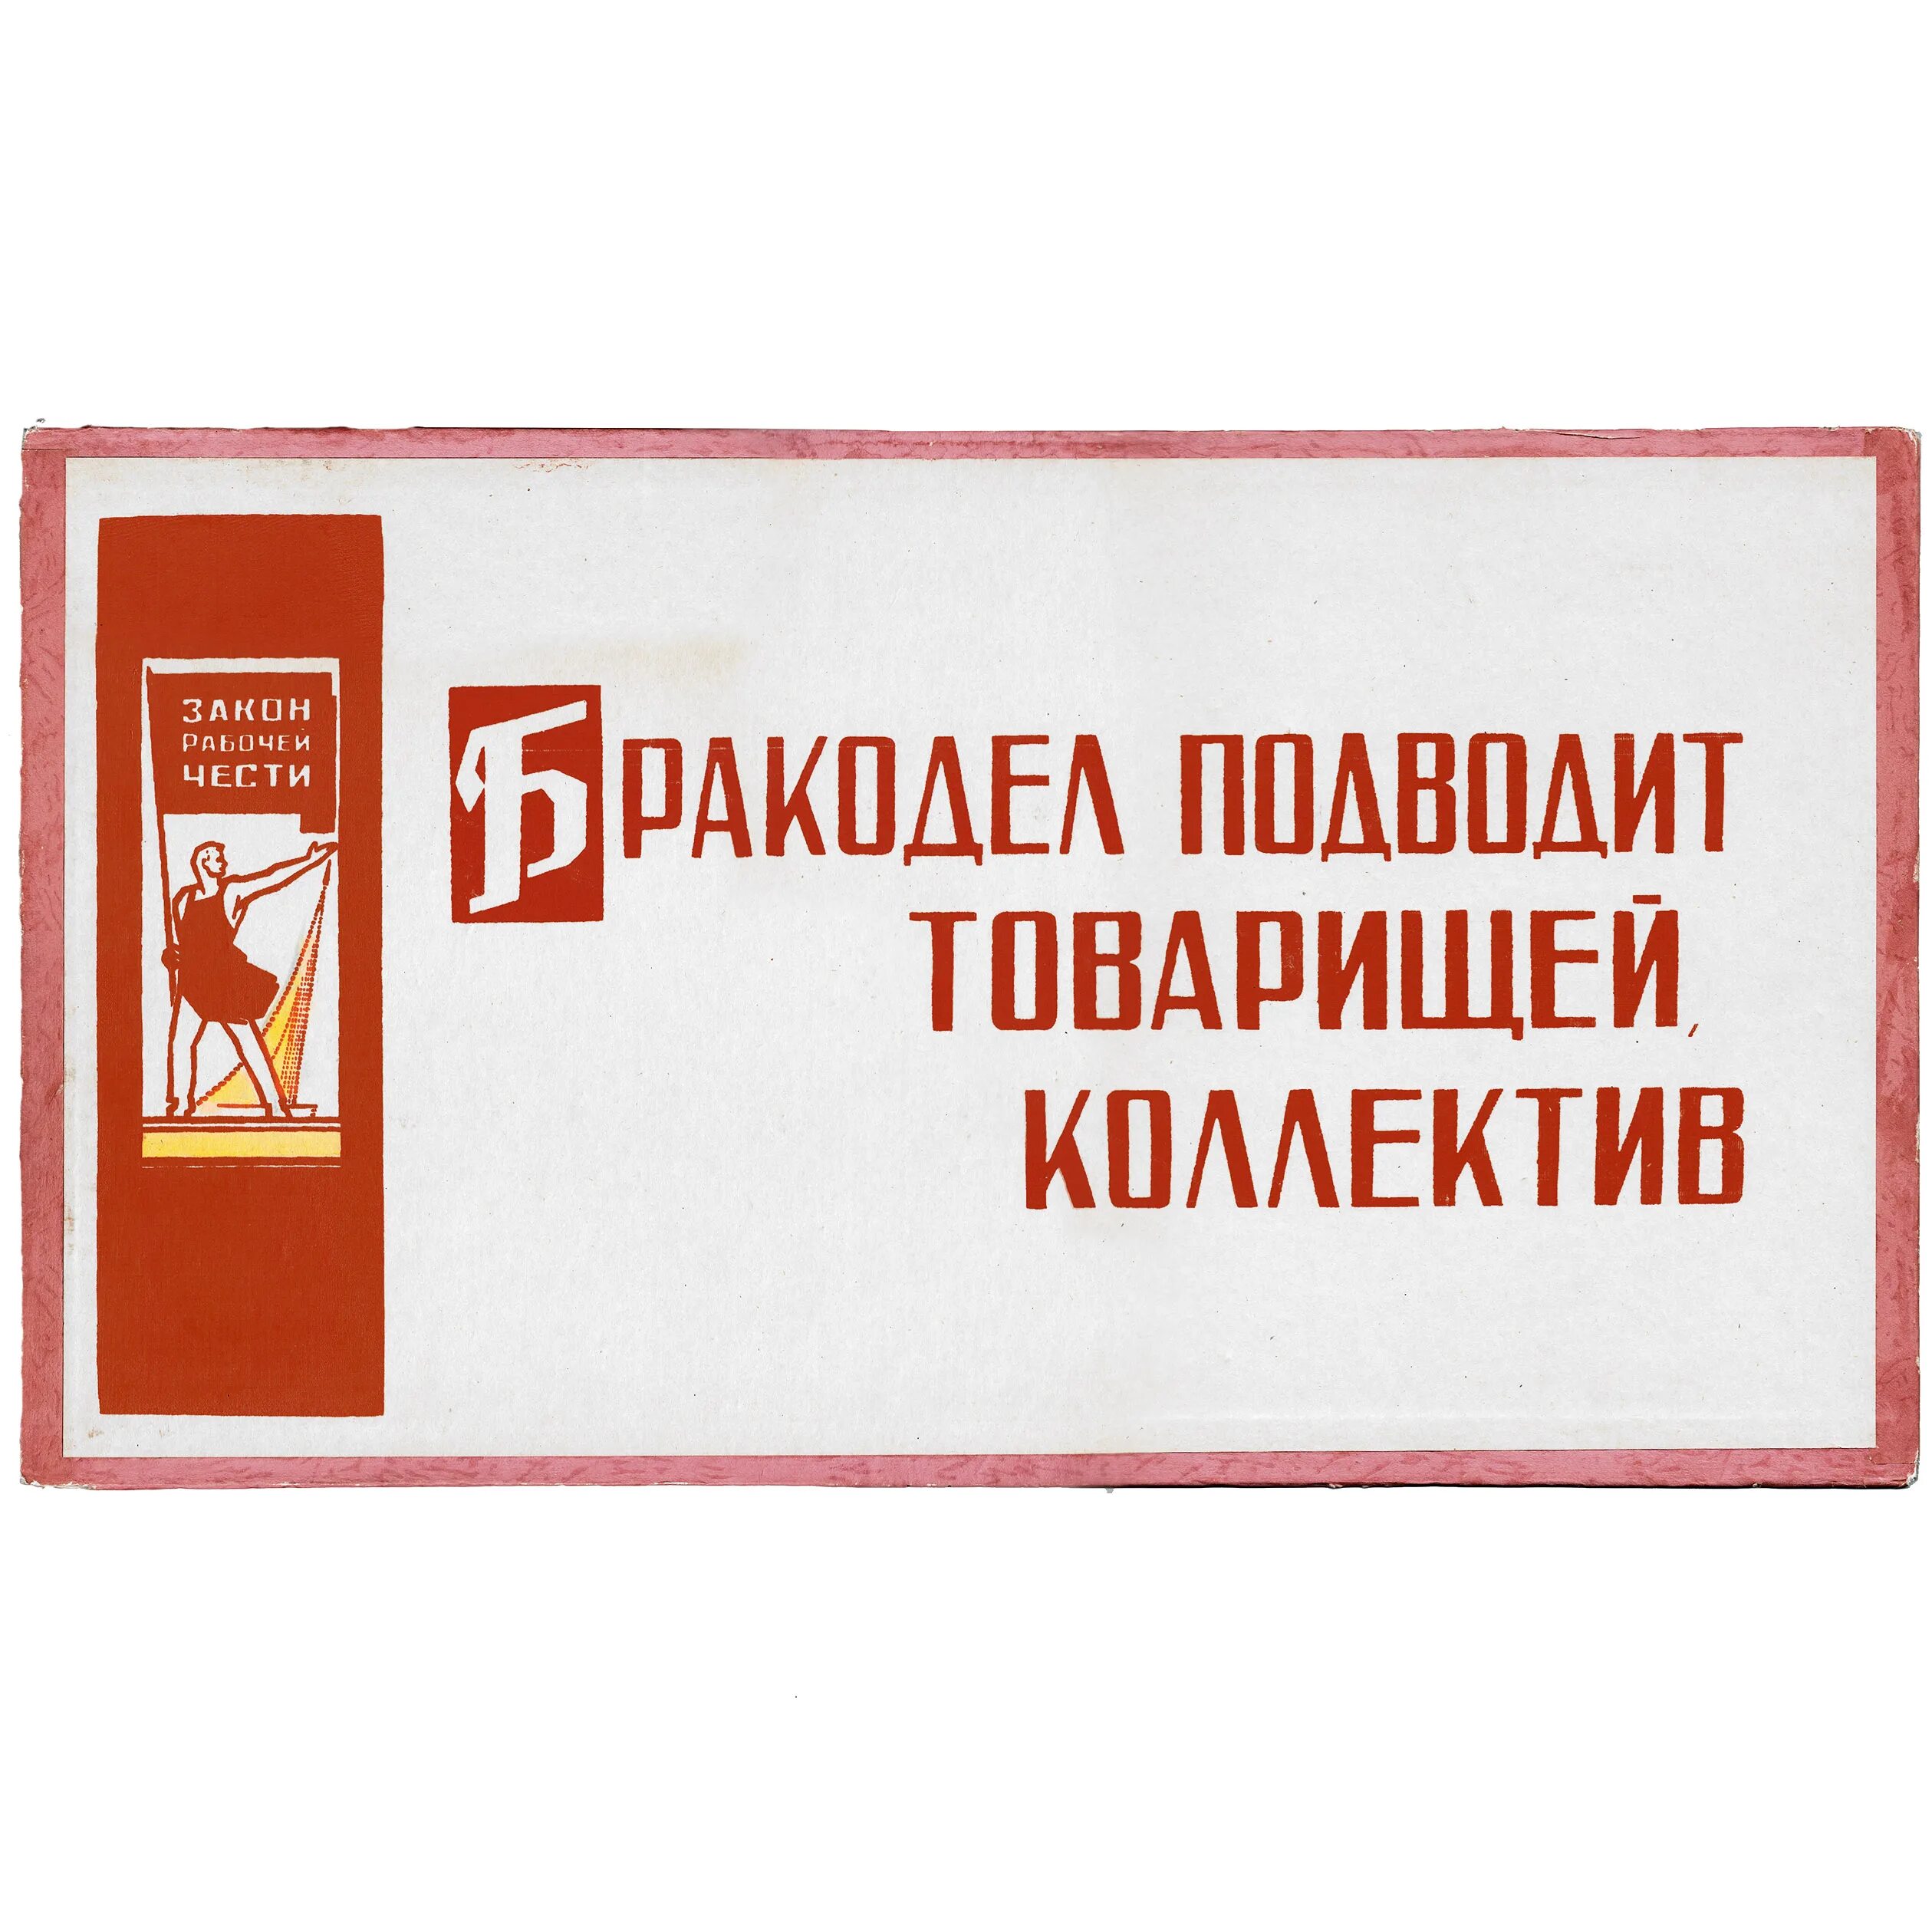 Советские лозунги и плакаты. Советские лозунги на производстве. Советские лозунги на заводах. Советские плакаты про качество продукции.